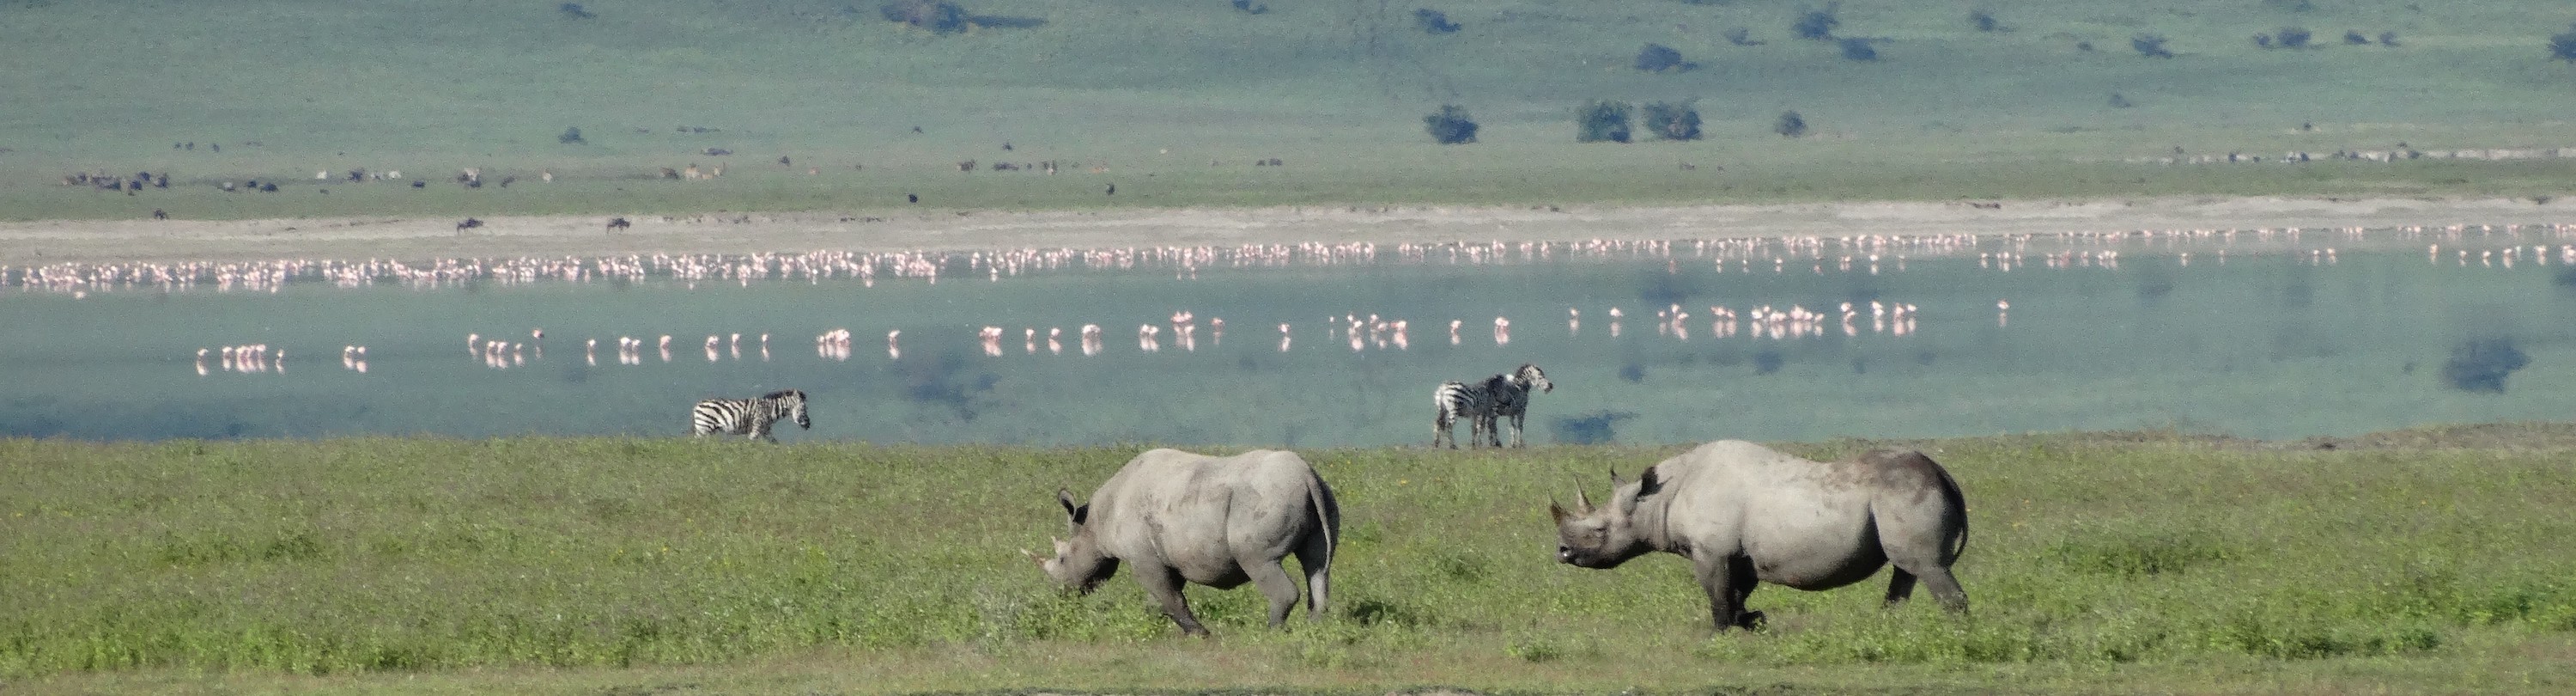 Ngorongoro Crater.jpeg 3